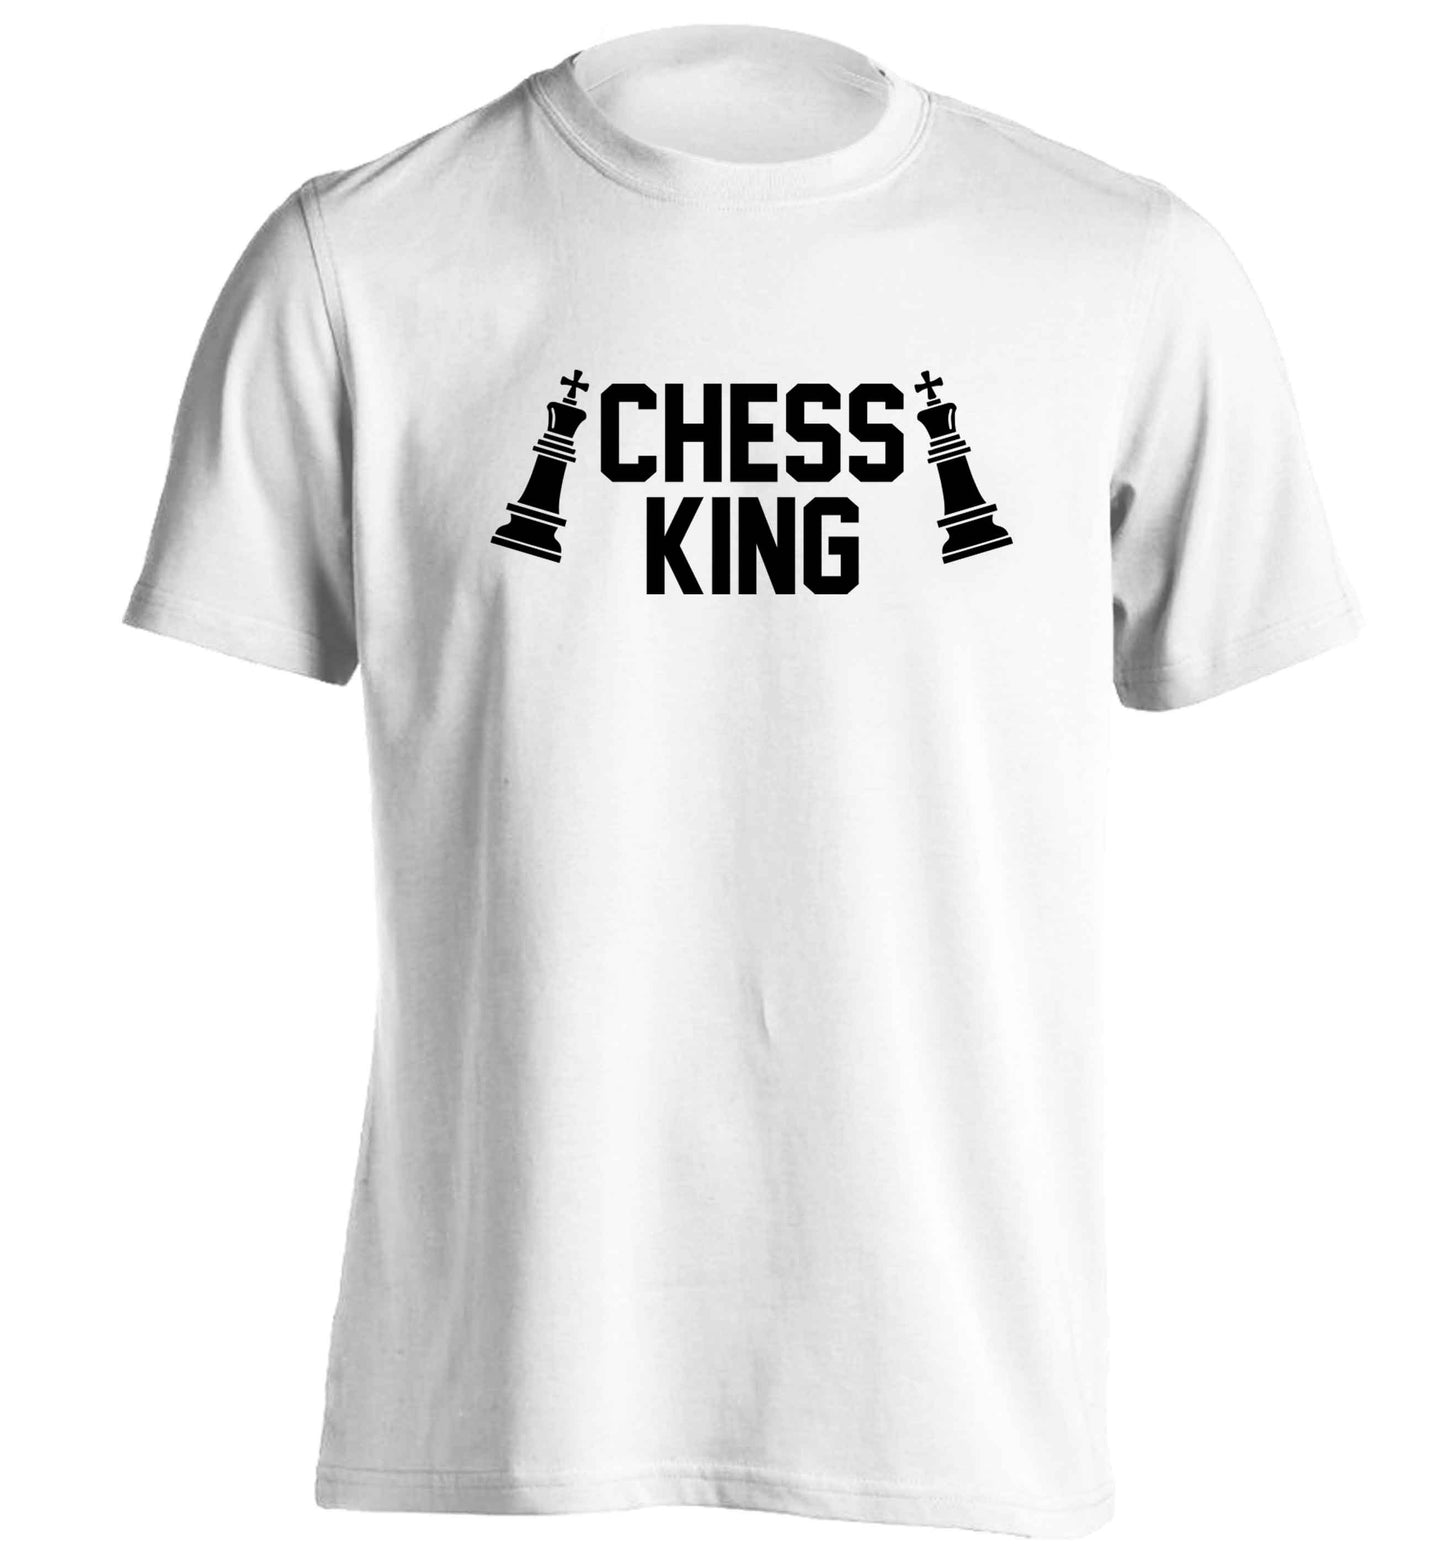 Chess king adults unisex white Tshirt 2XL